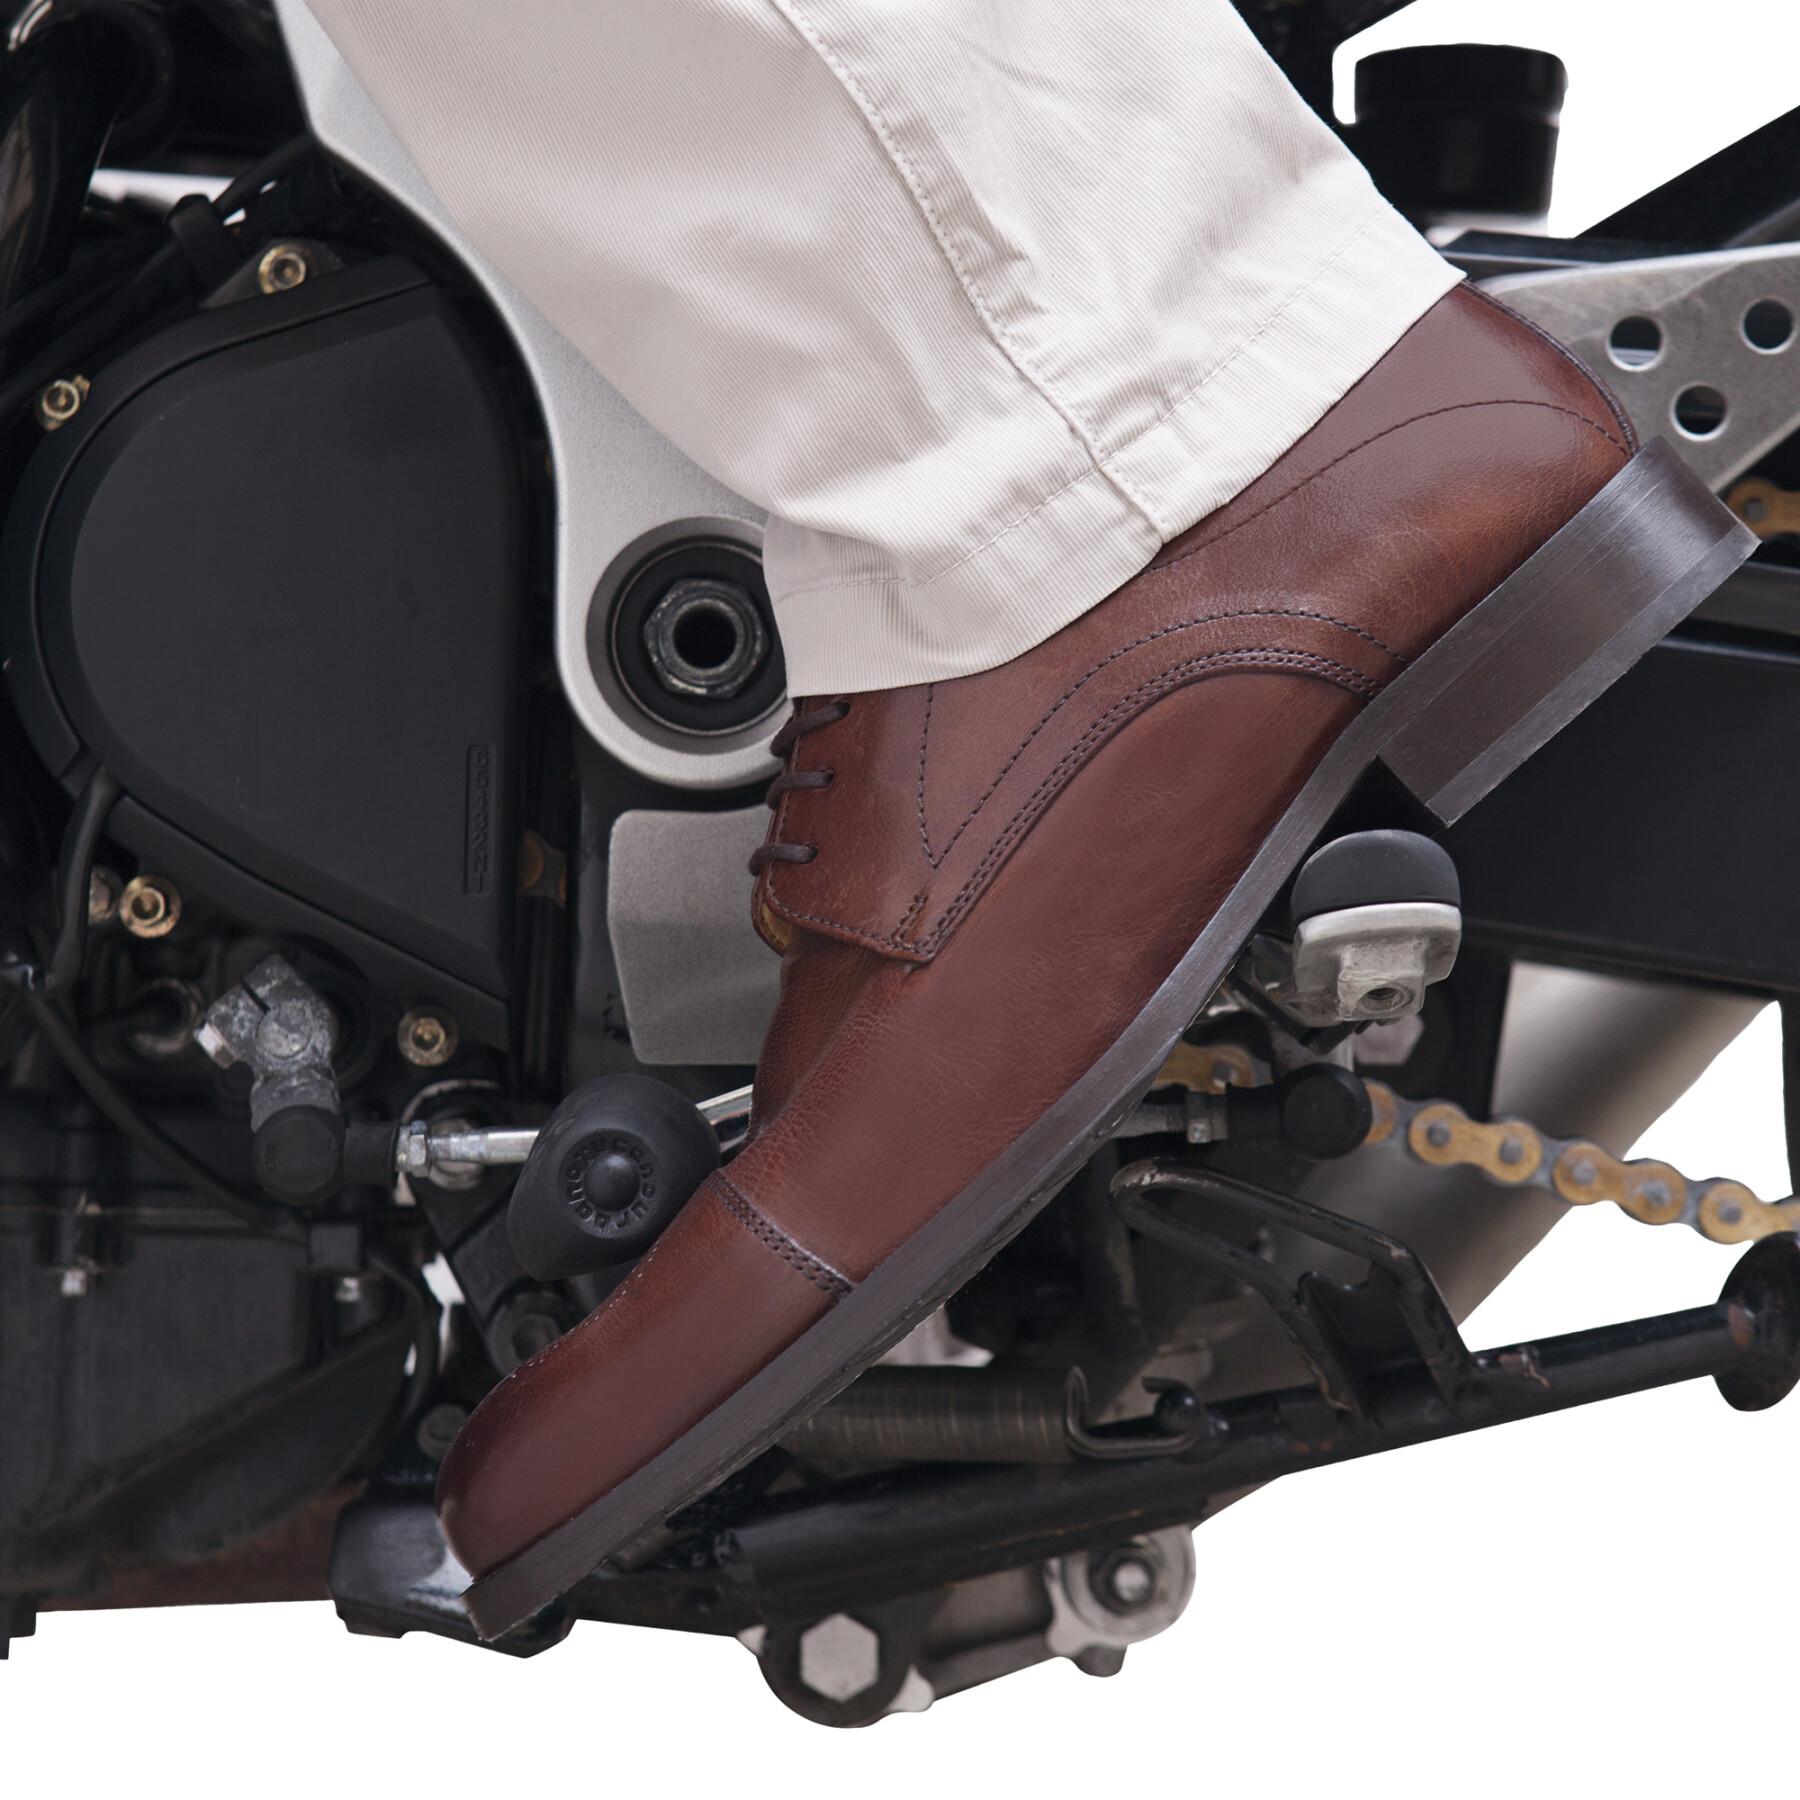 Protezione del bagagliaio della moto Tucano Urbano new foot on